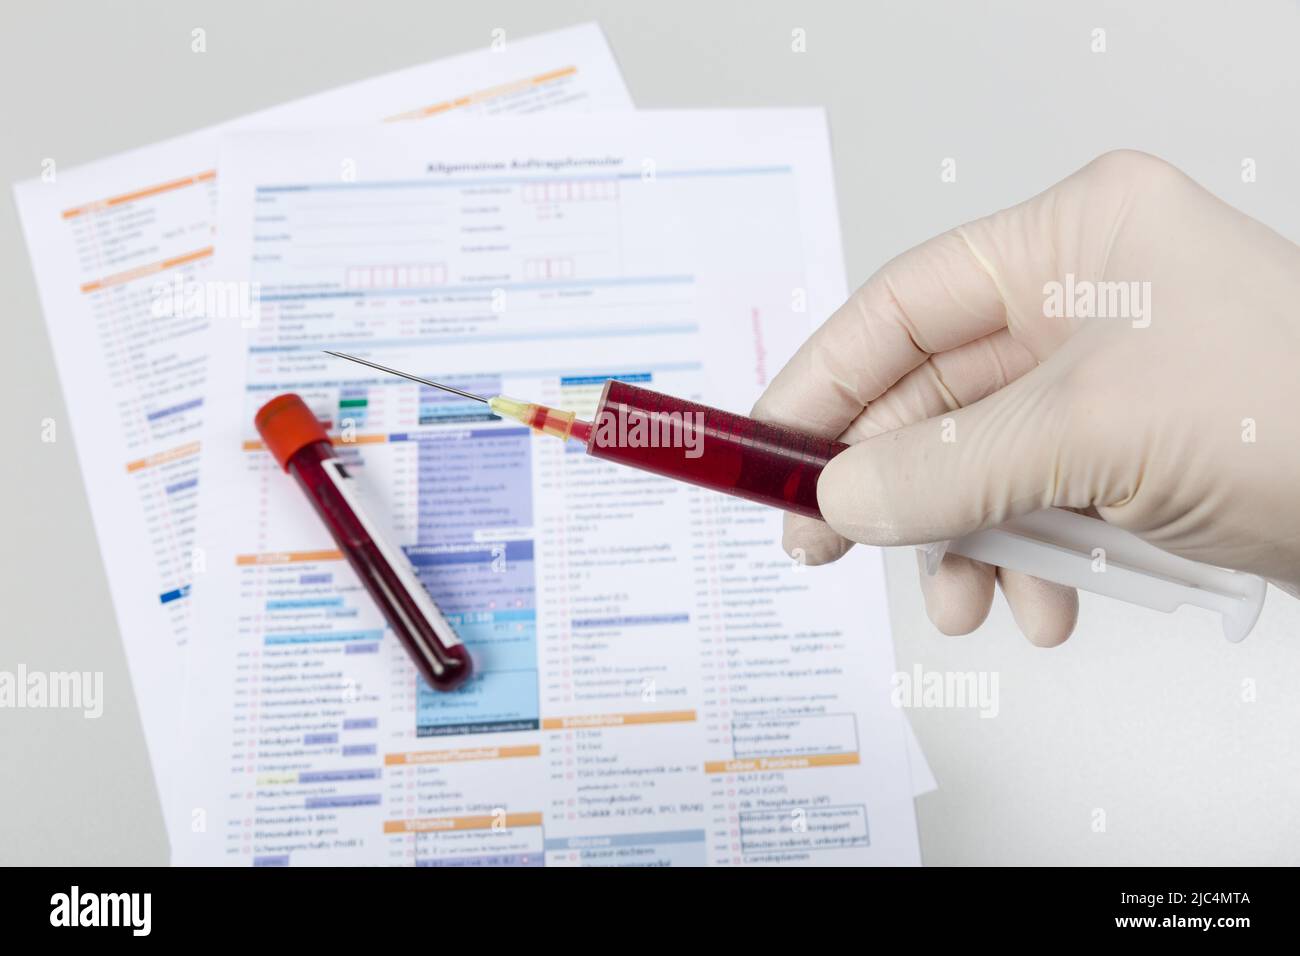 Hand in medizinischen Handschuhen hält eine Spritze mit Blut vor einem Antragsformular für die Analyse in einem Labor Stockfoto